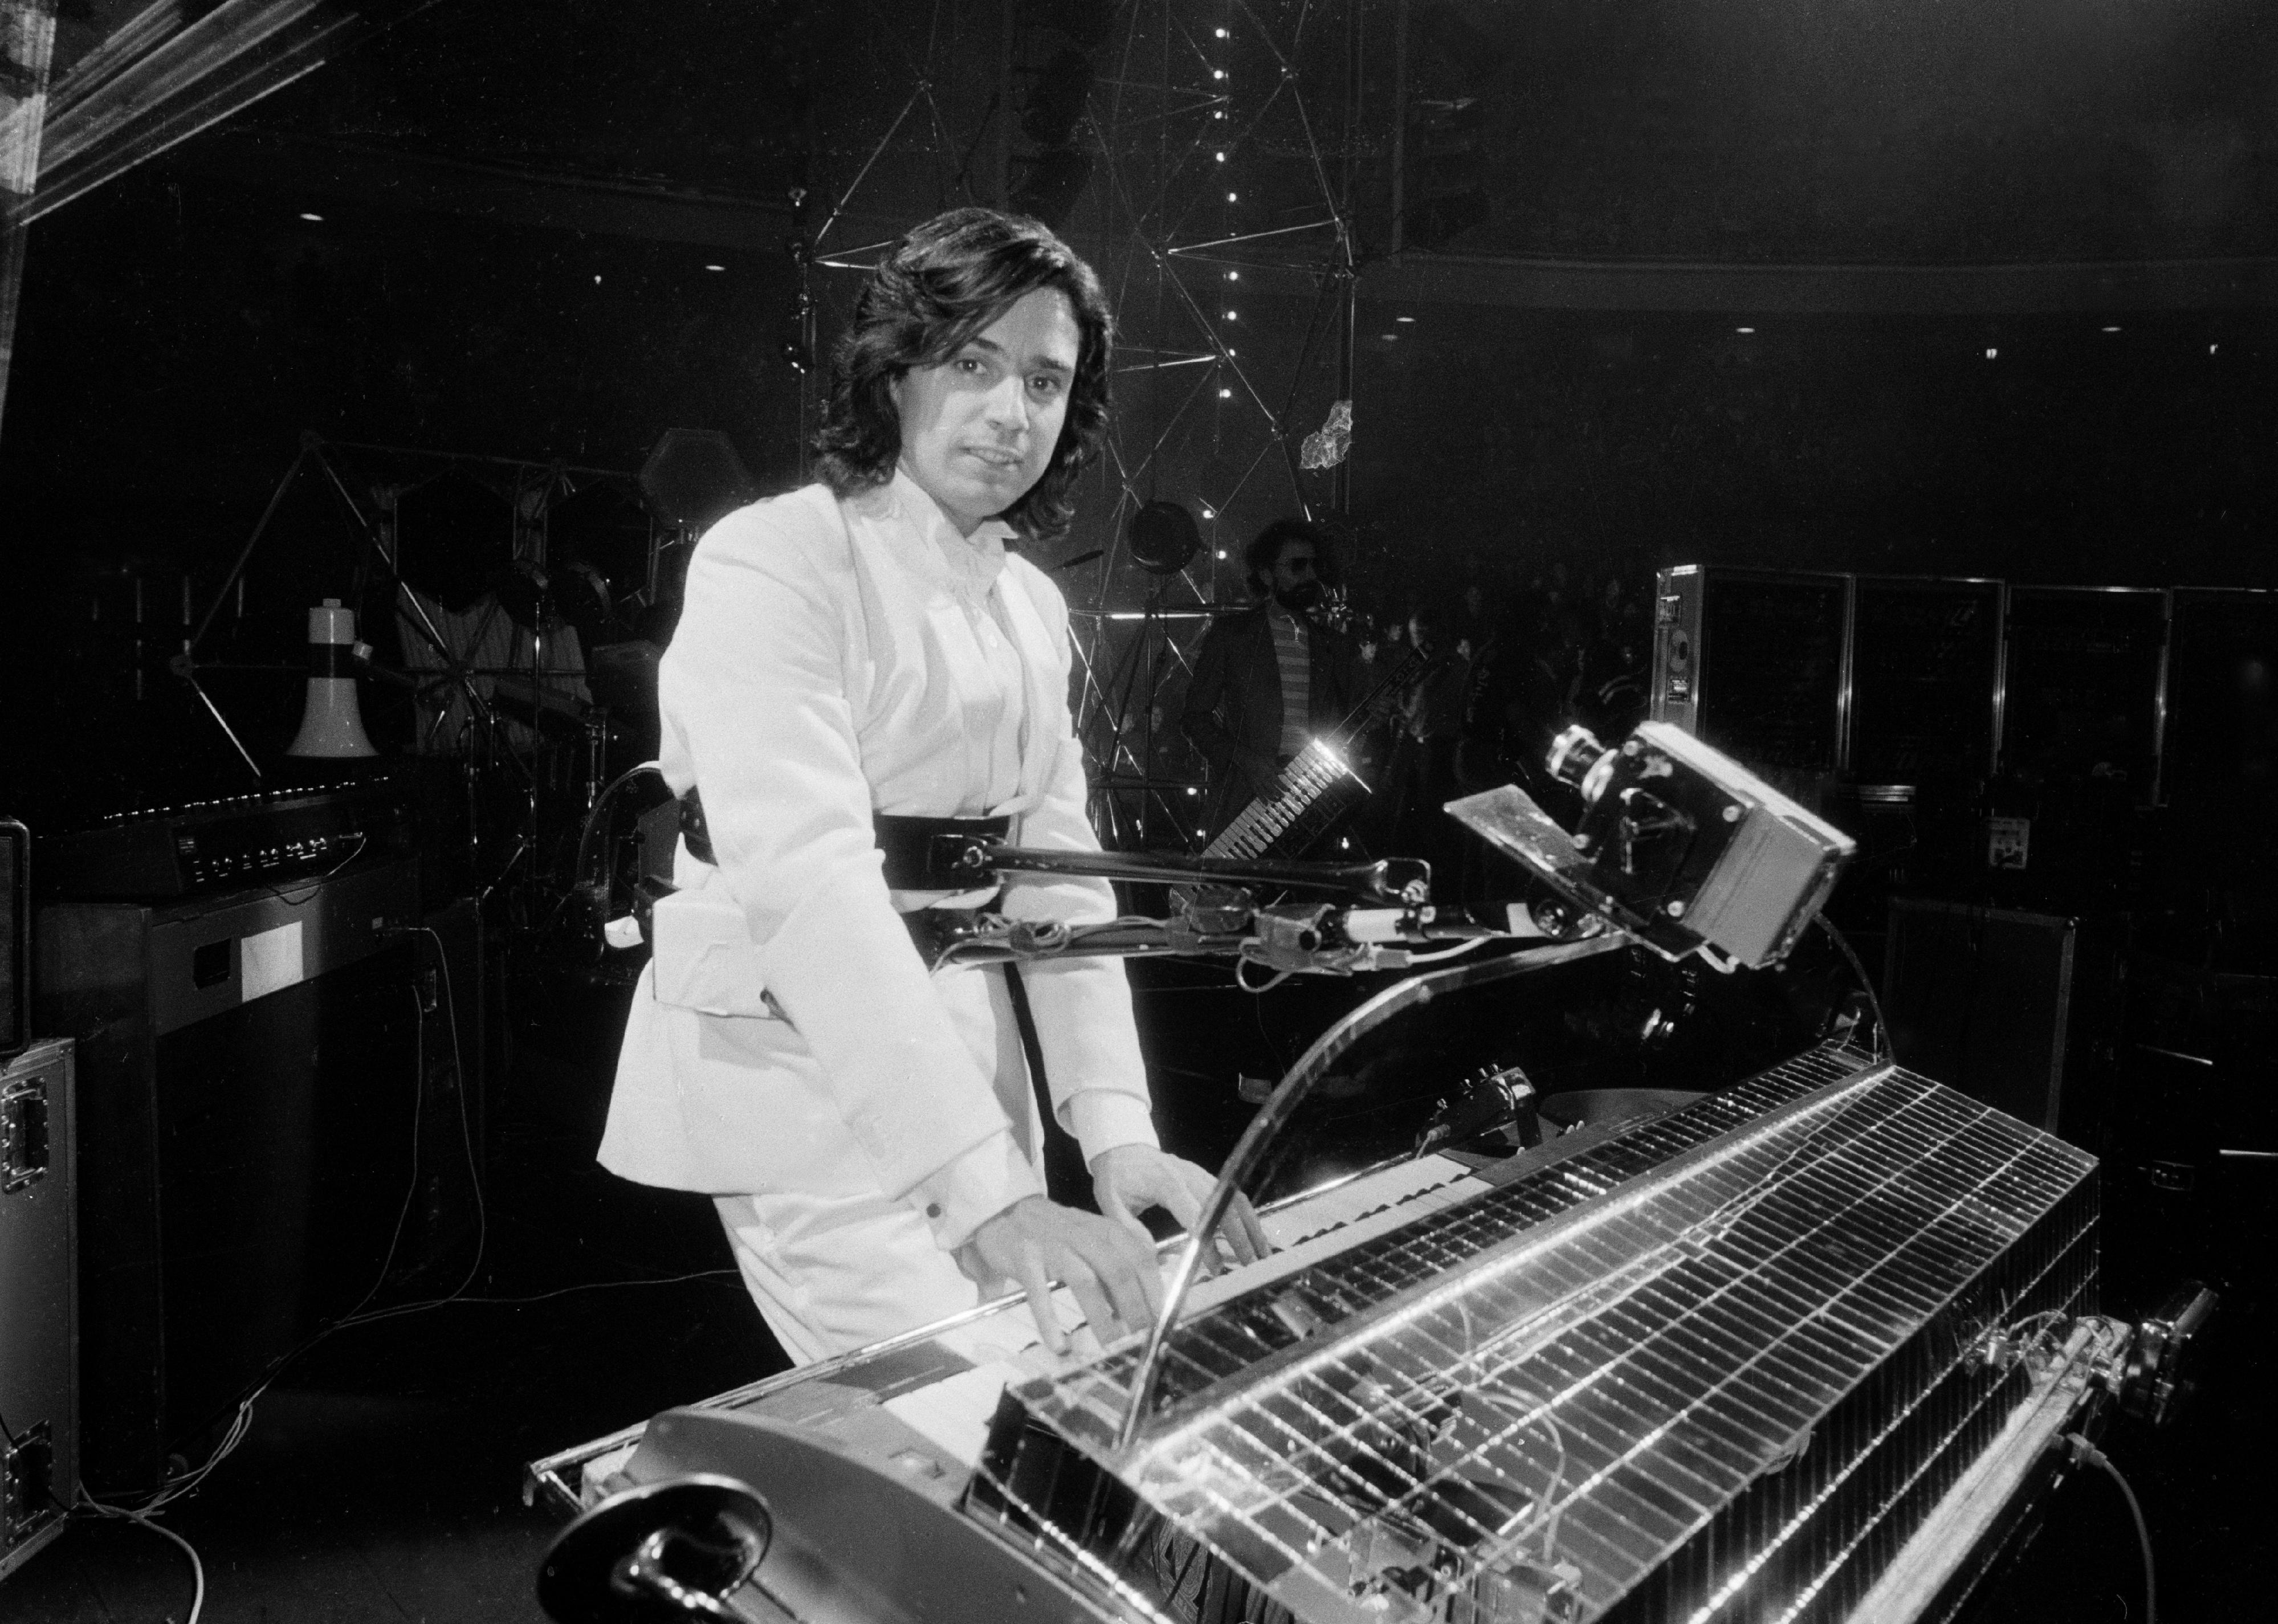 Jean-Michel Jarre in concert.